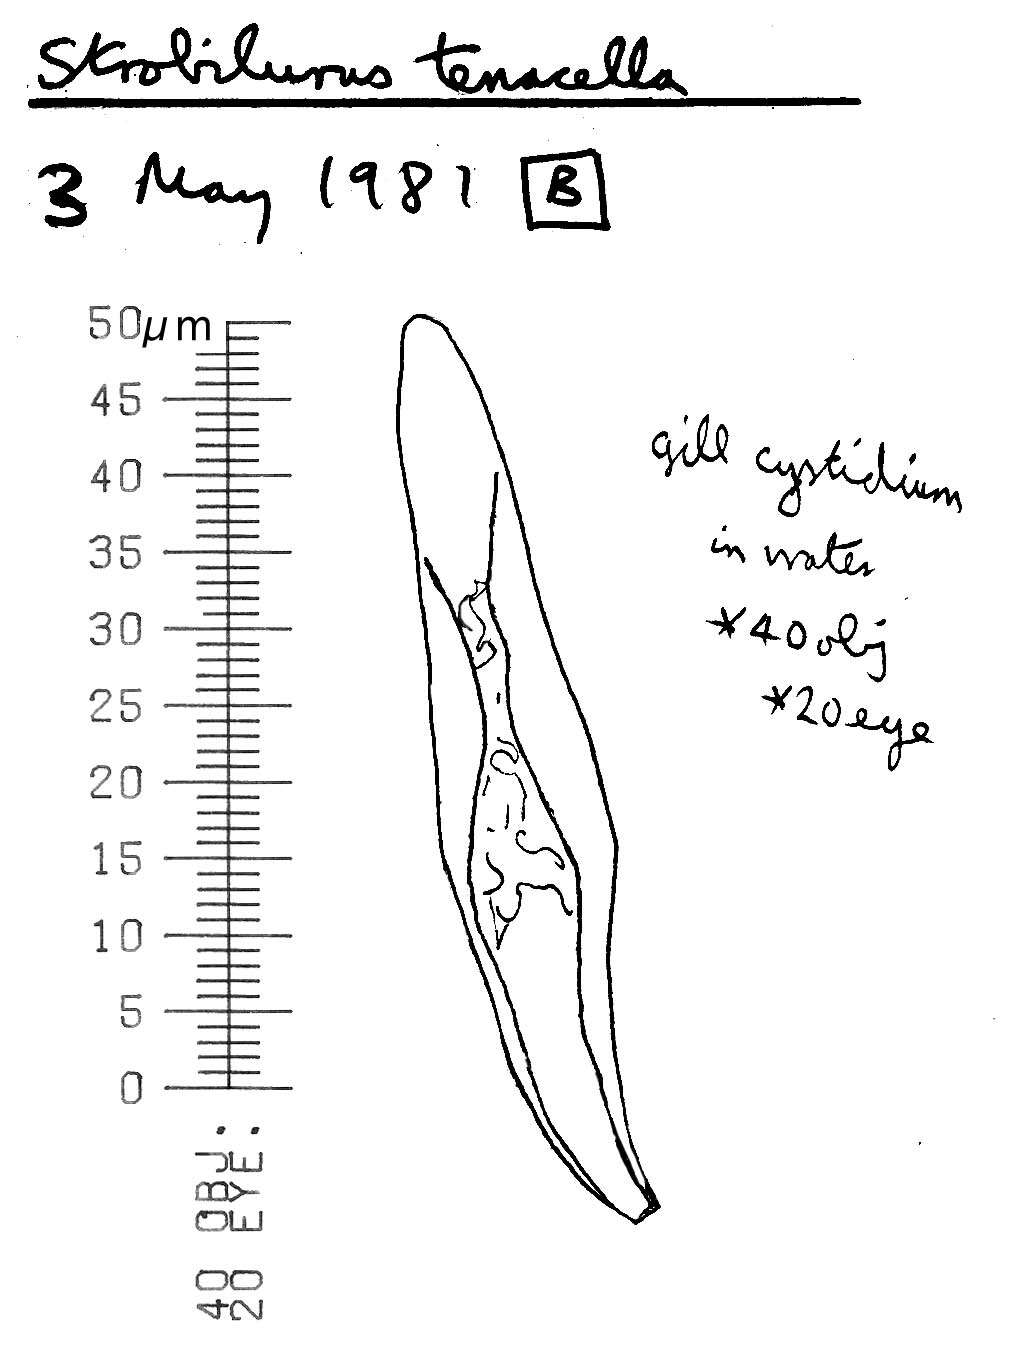 Image of Strobilurus tenacellus (Pers.) Singer 1962